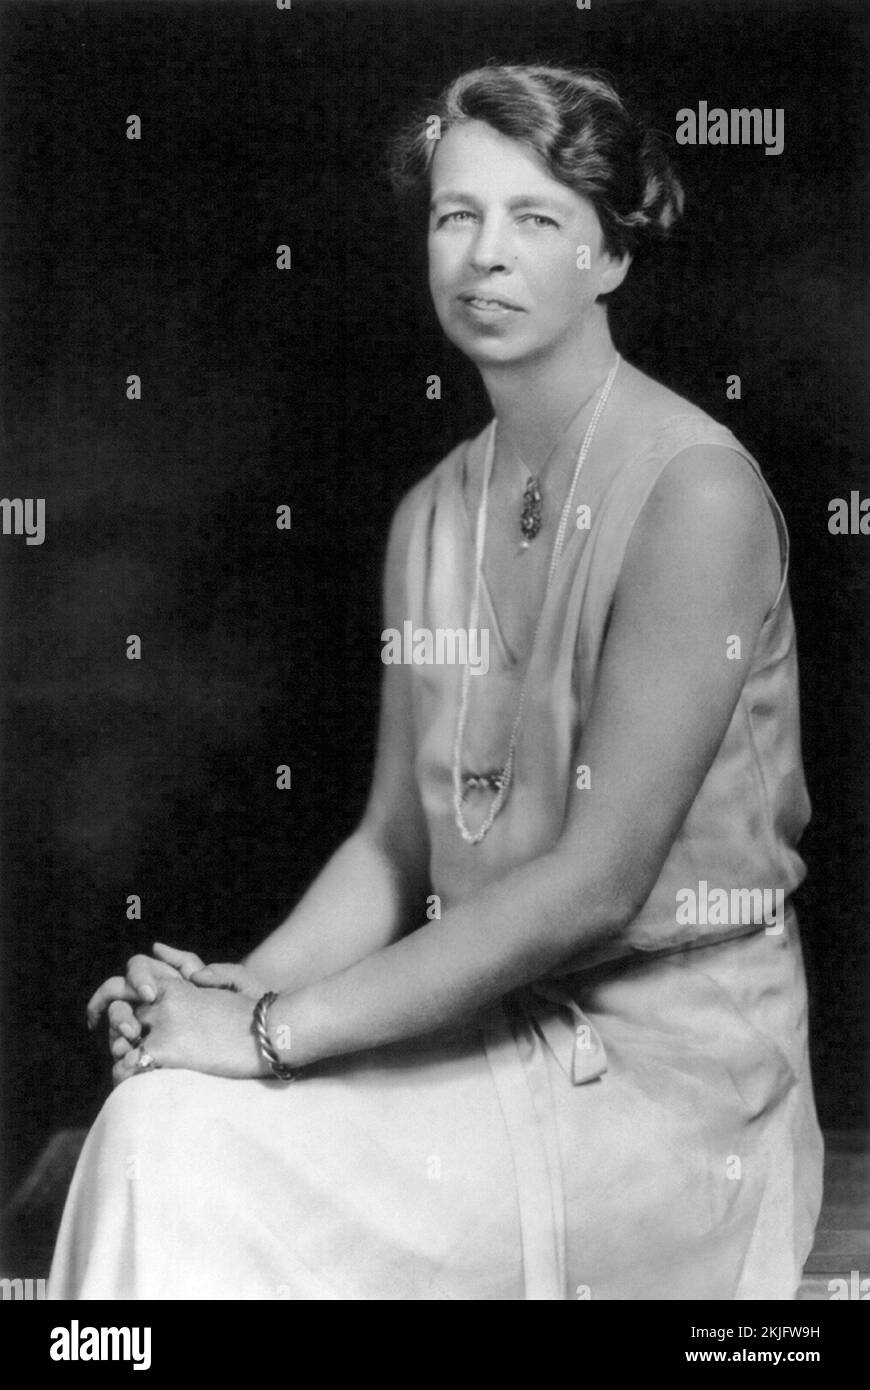 Eleanor Roosevelt. Si dice che la foto sia del 1932 quando shenween 48 yrs, ma sembra più giovane di 48 yrs, quindi la data può essere dubbiosa Foto Stock